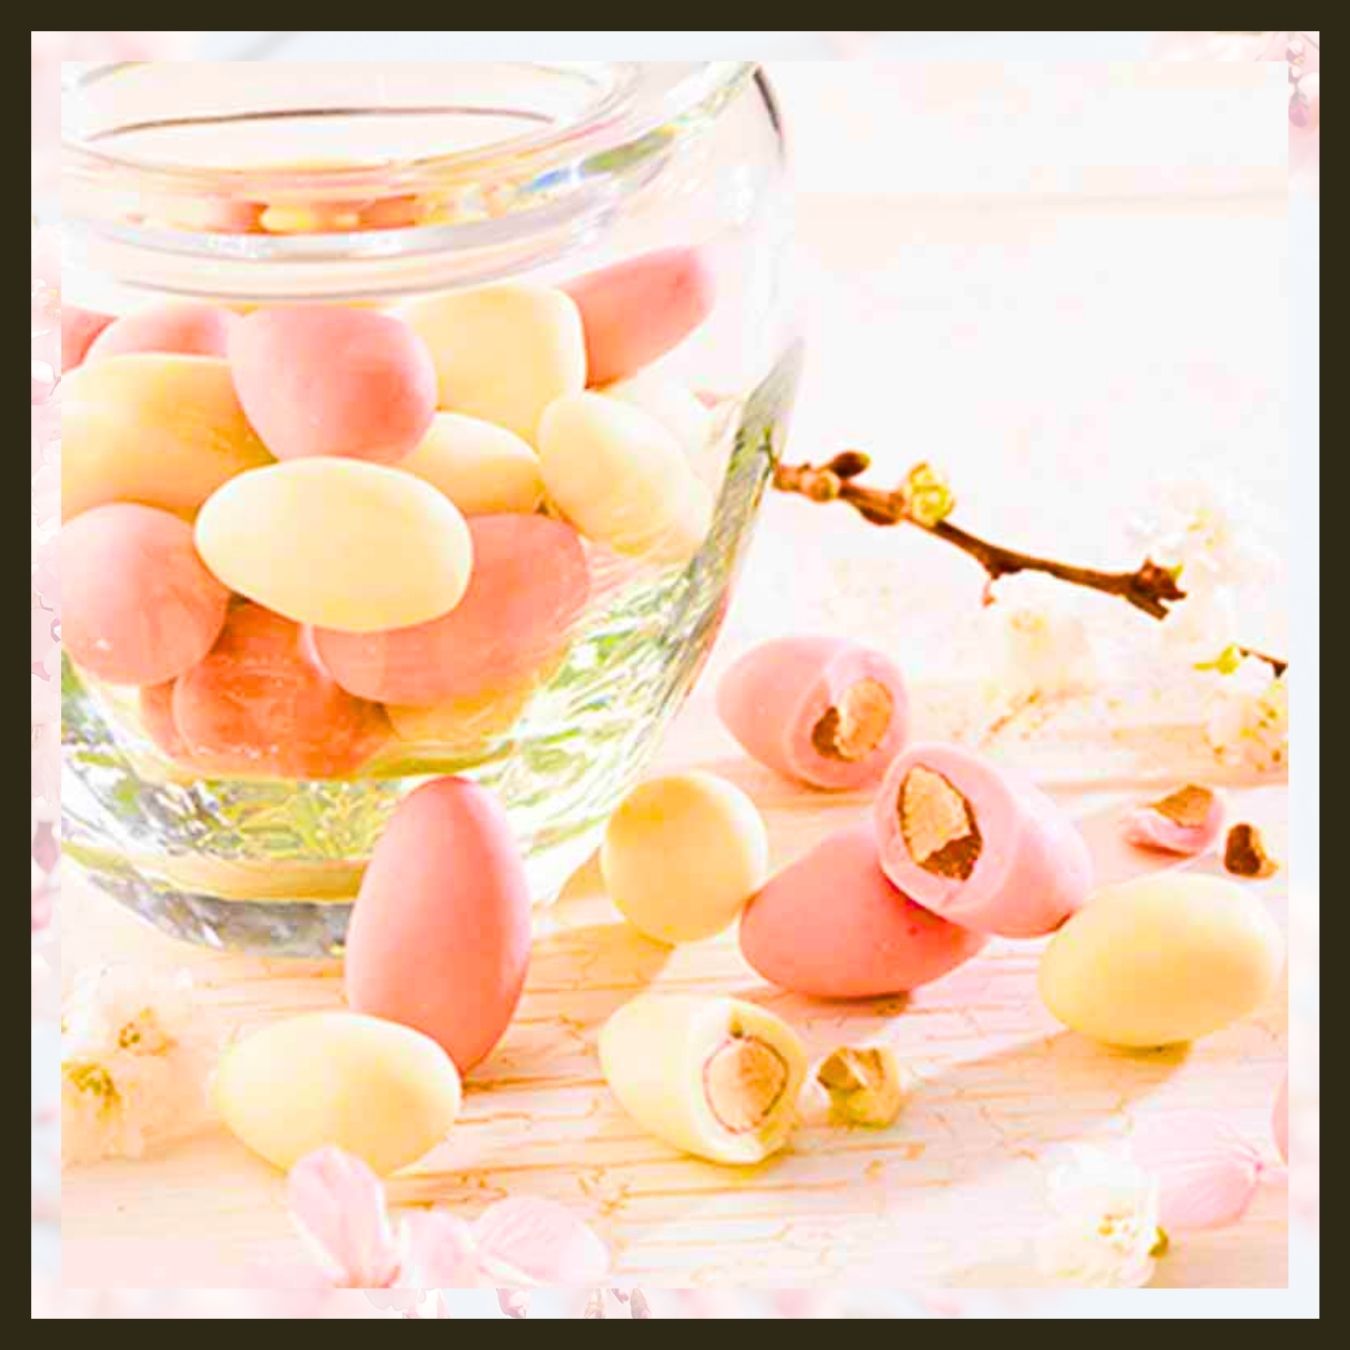 Delicate Seasonal Cherry Blossoms Almond Chocolate Sakura - ROYCE - JapanHapiness